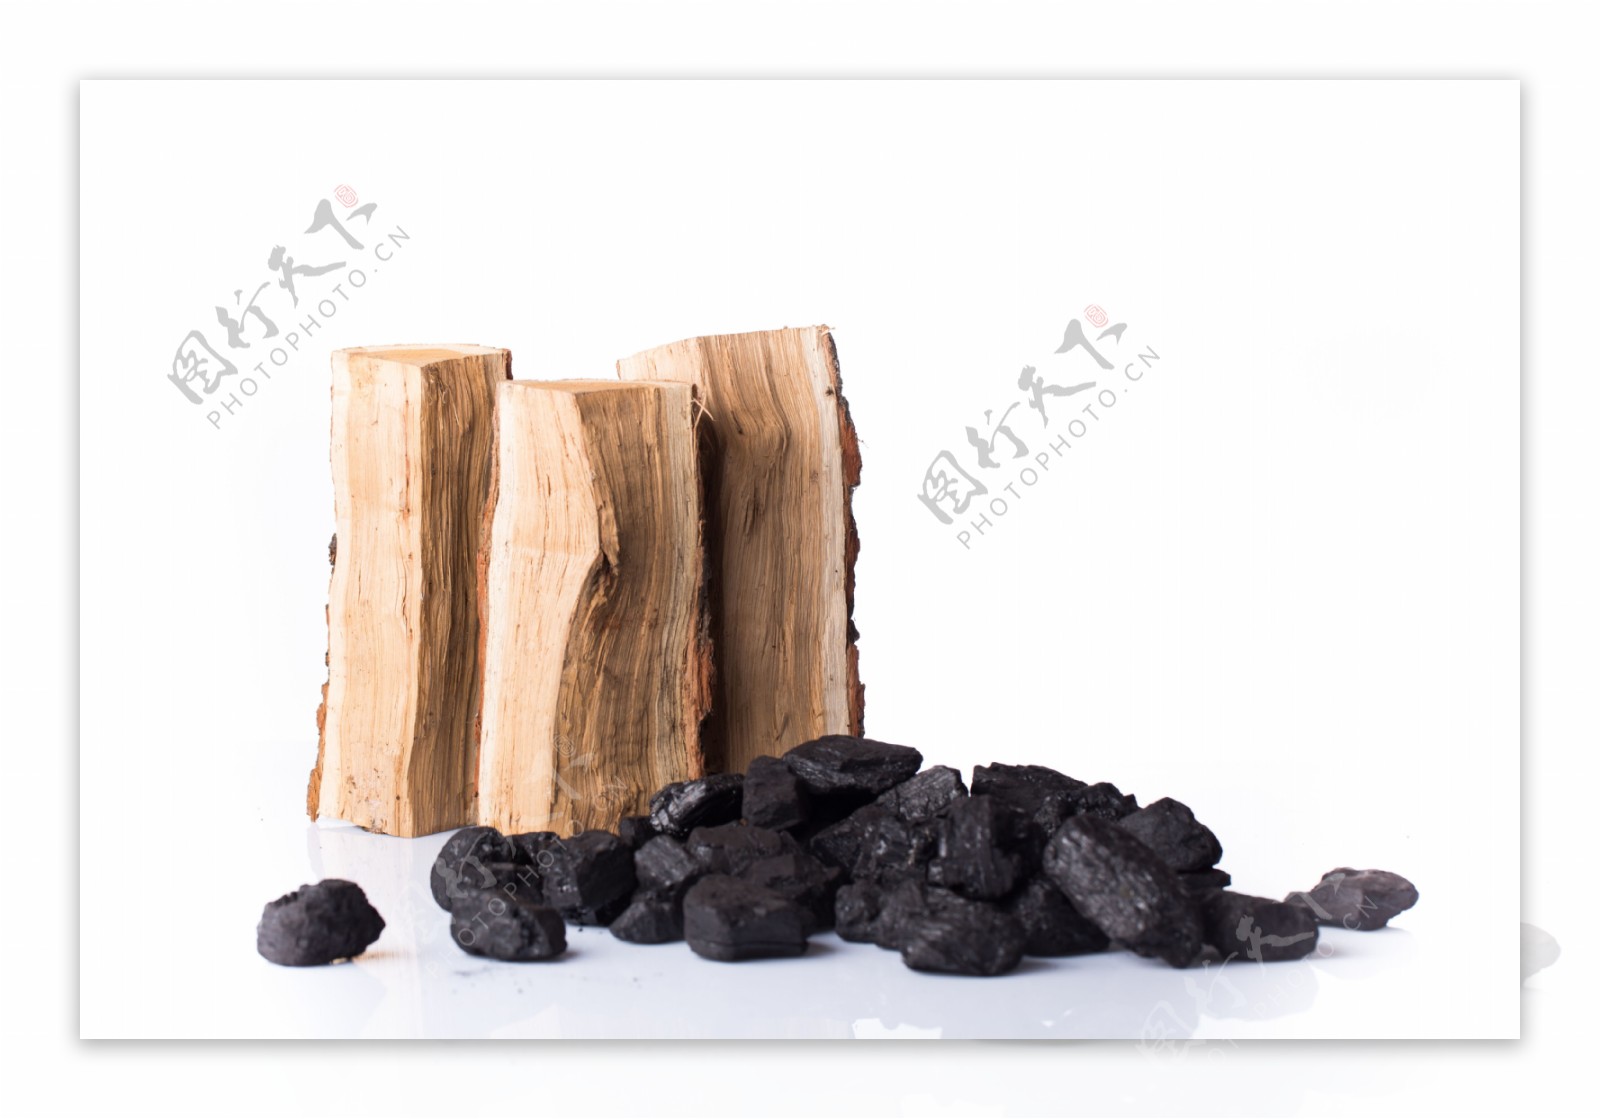 柴火与煤炭图片